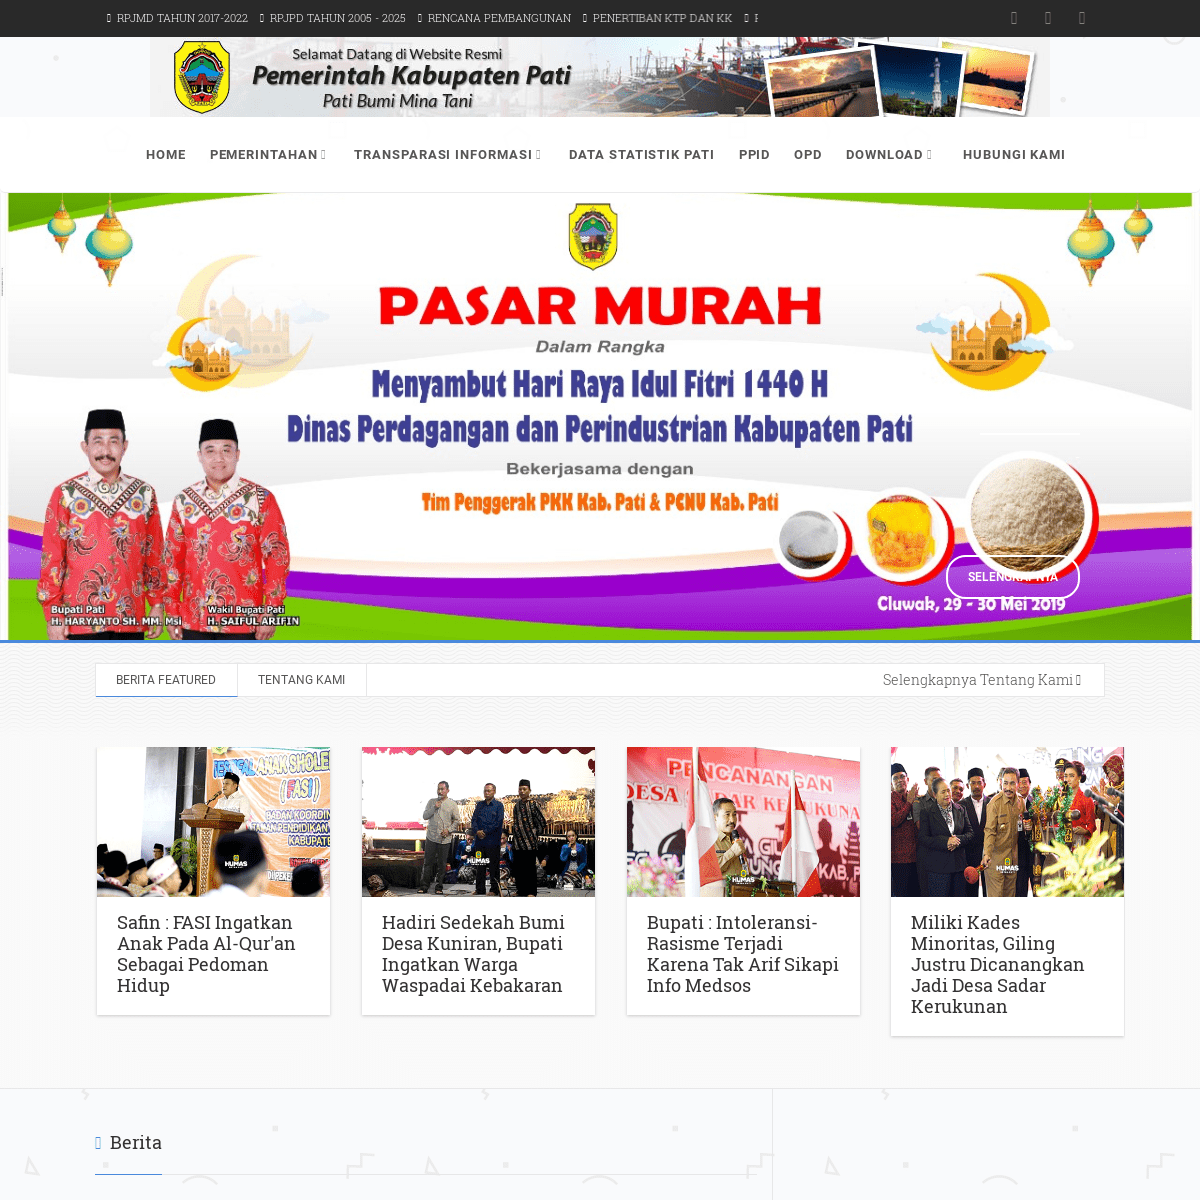 Website Resmi Pemerintah Kabupaten Pati